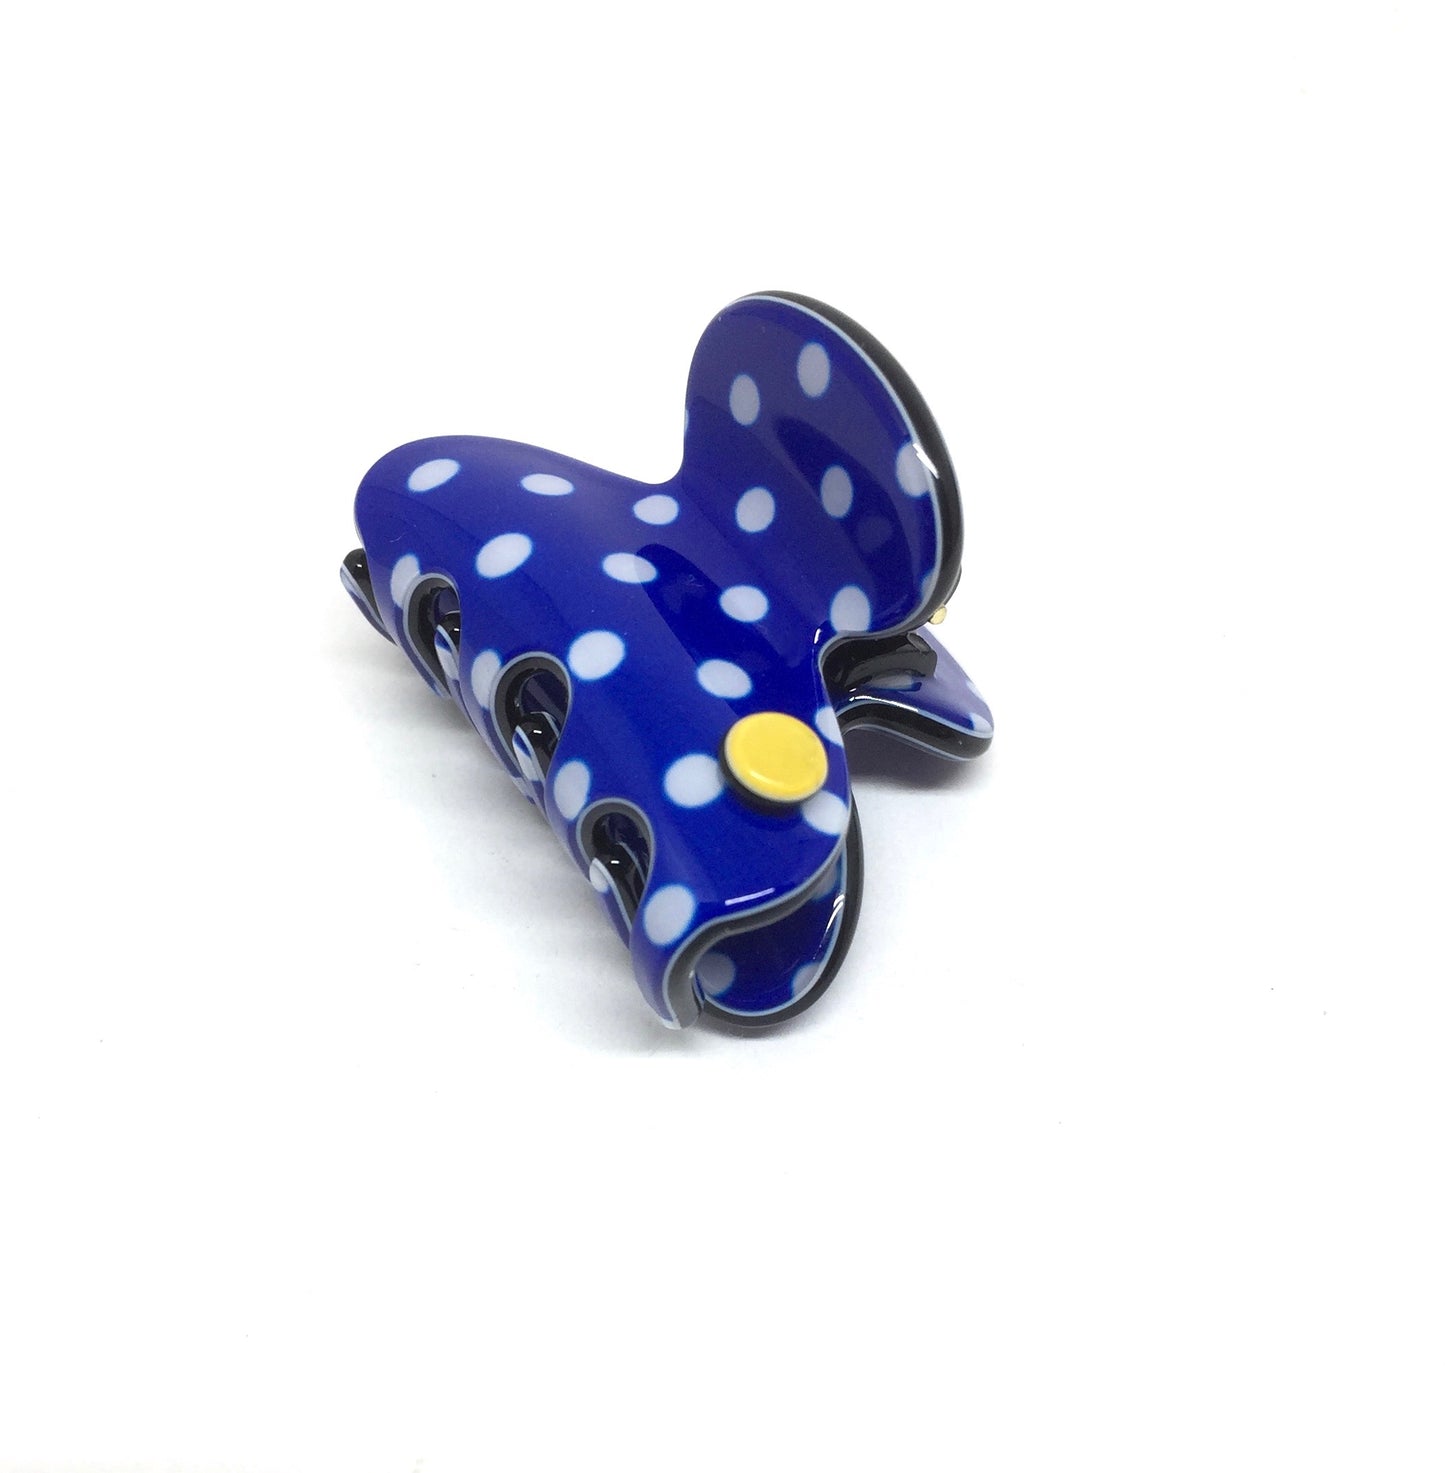 Barcelona mini claw - blue polka